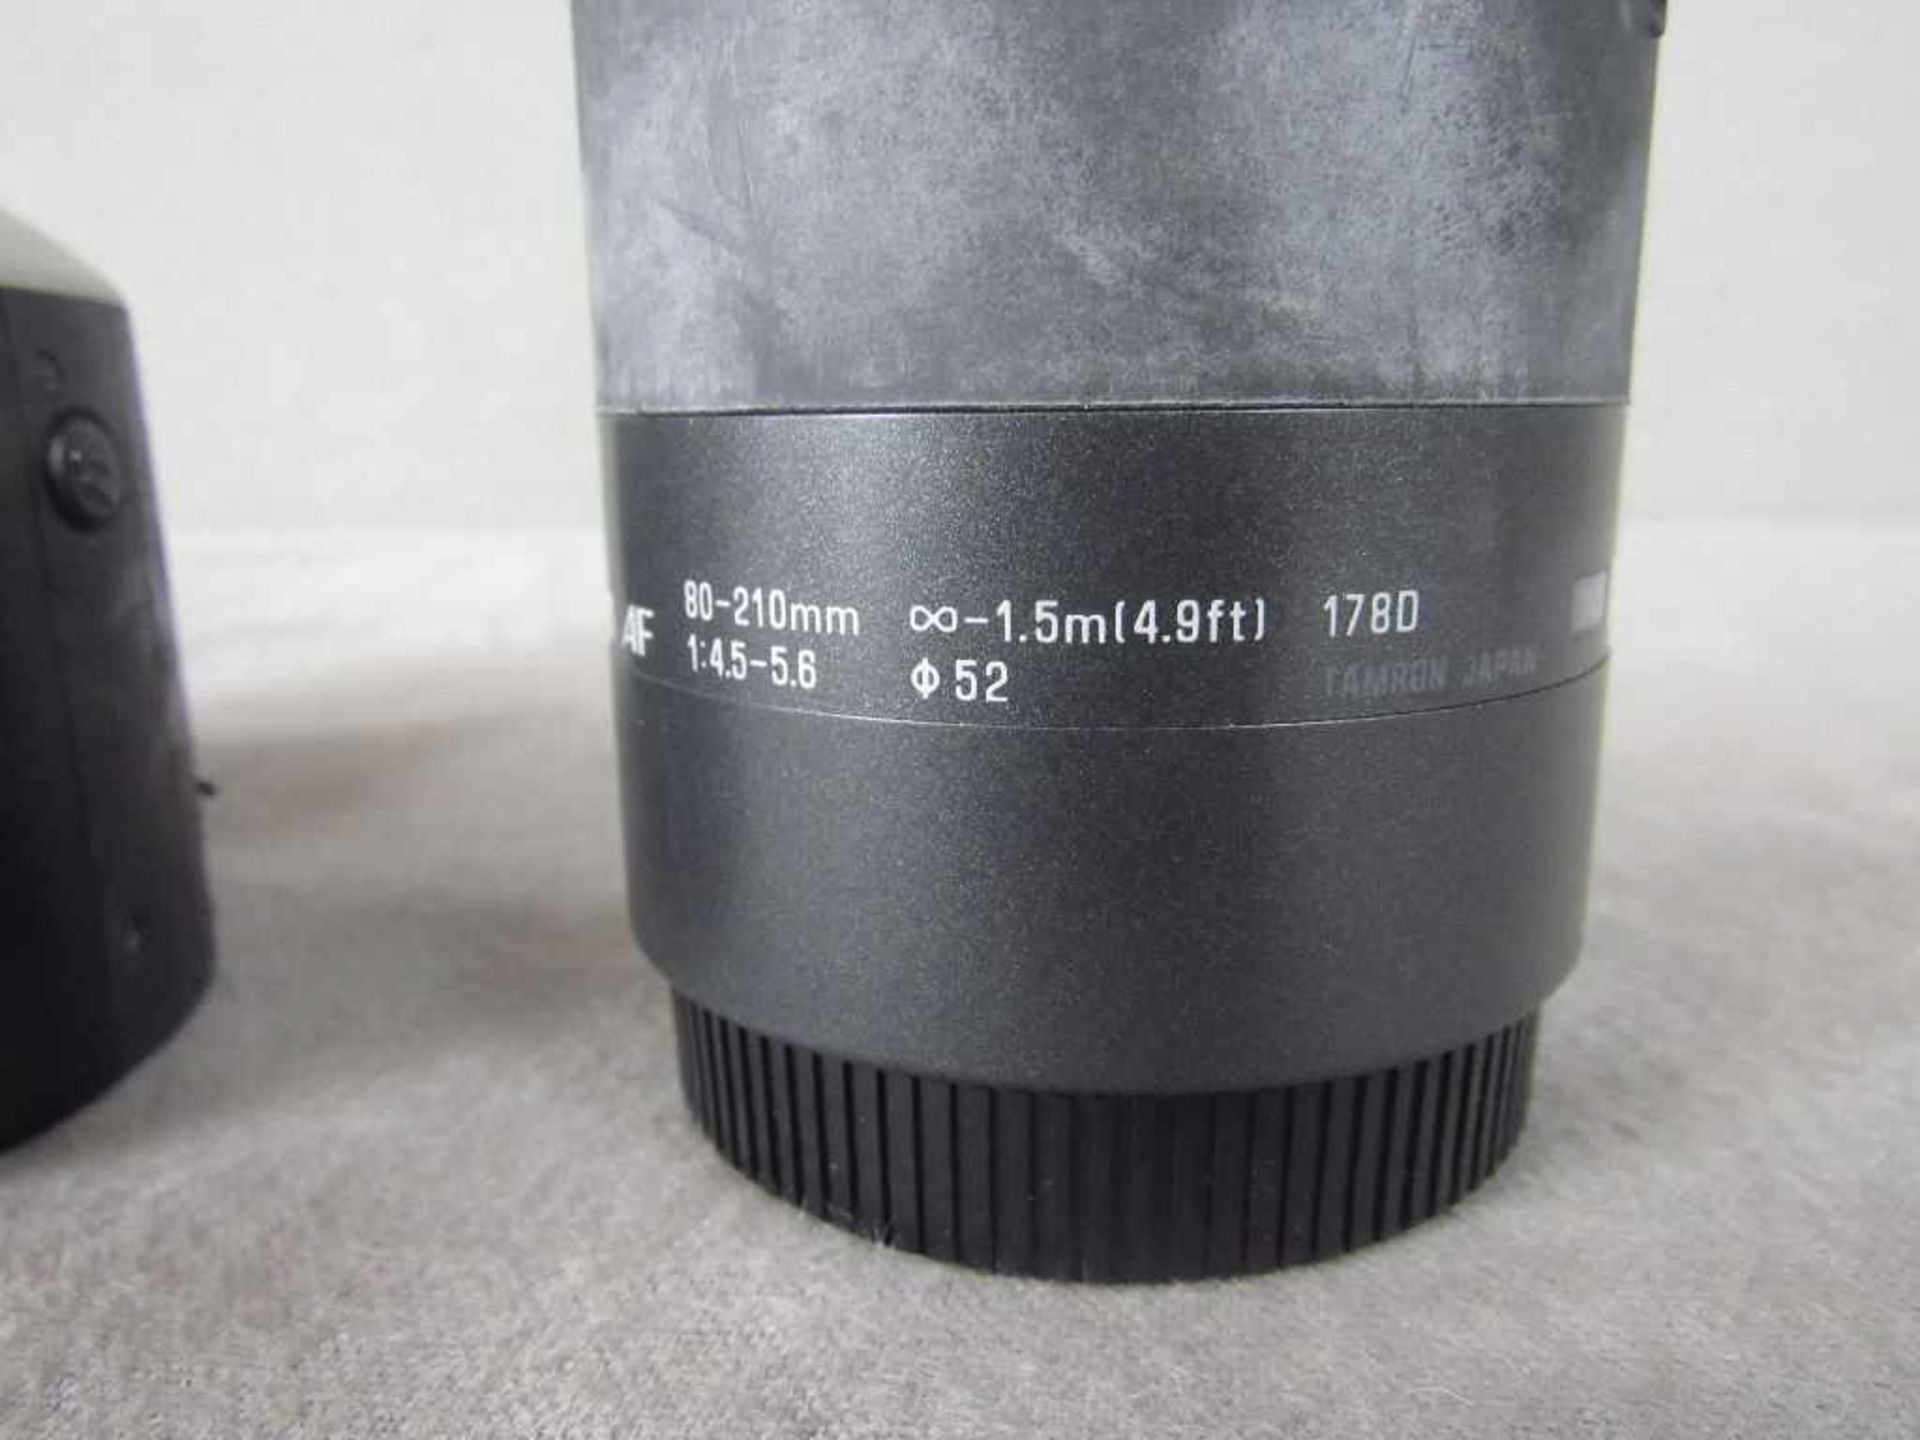 Spiegelreflexkamera Eos 500 N mit Tamron Objektiv - Image 4 of 4